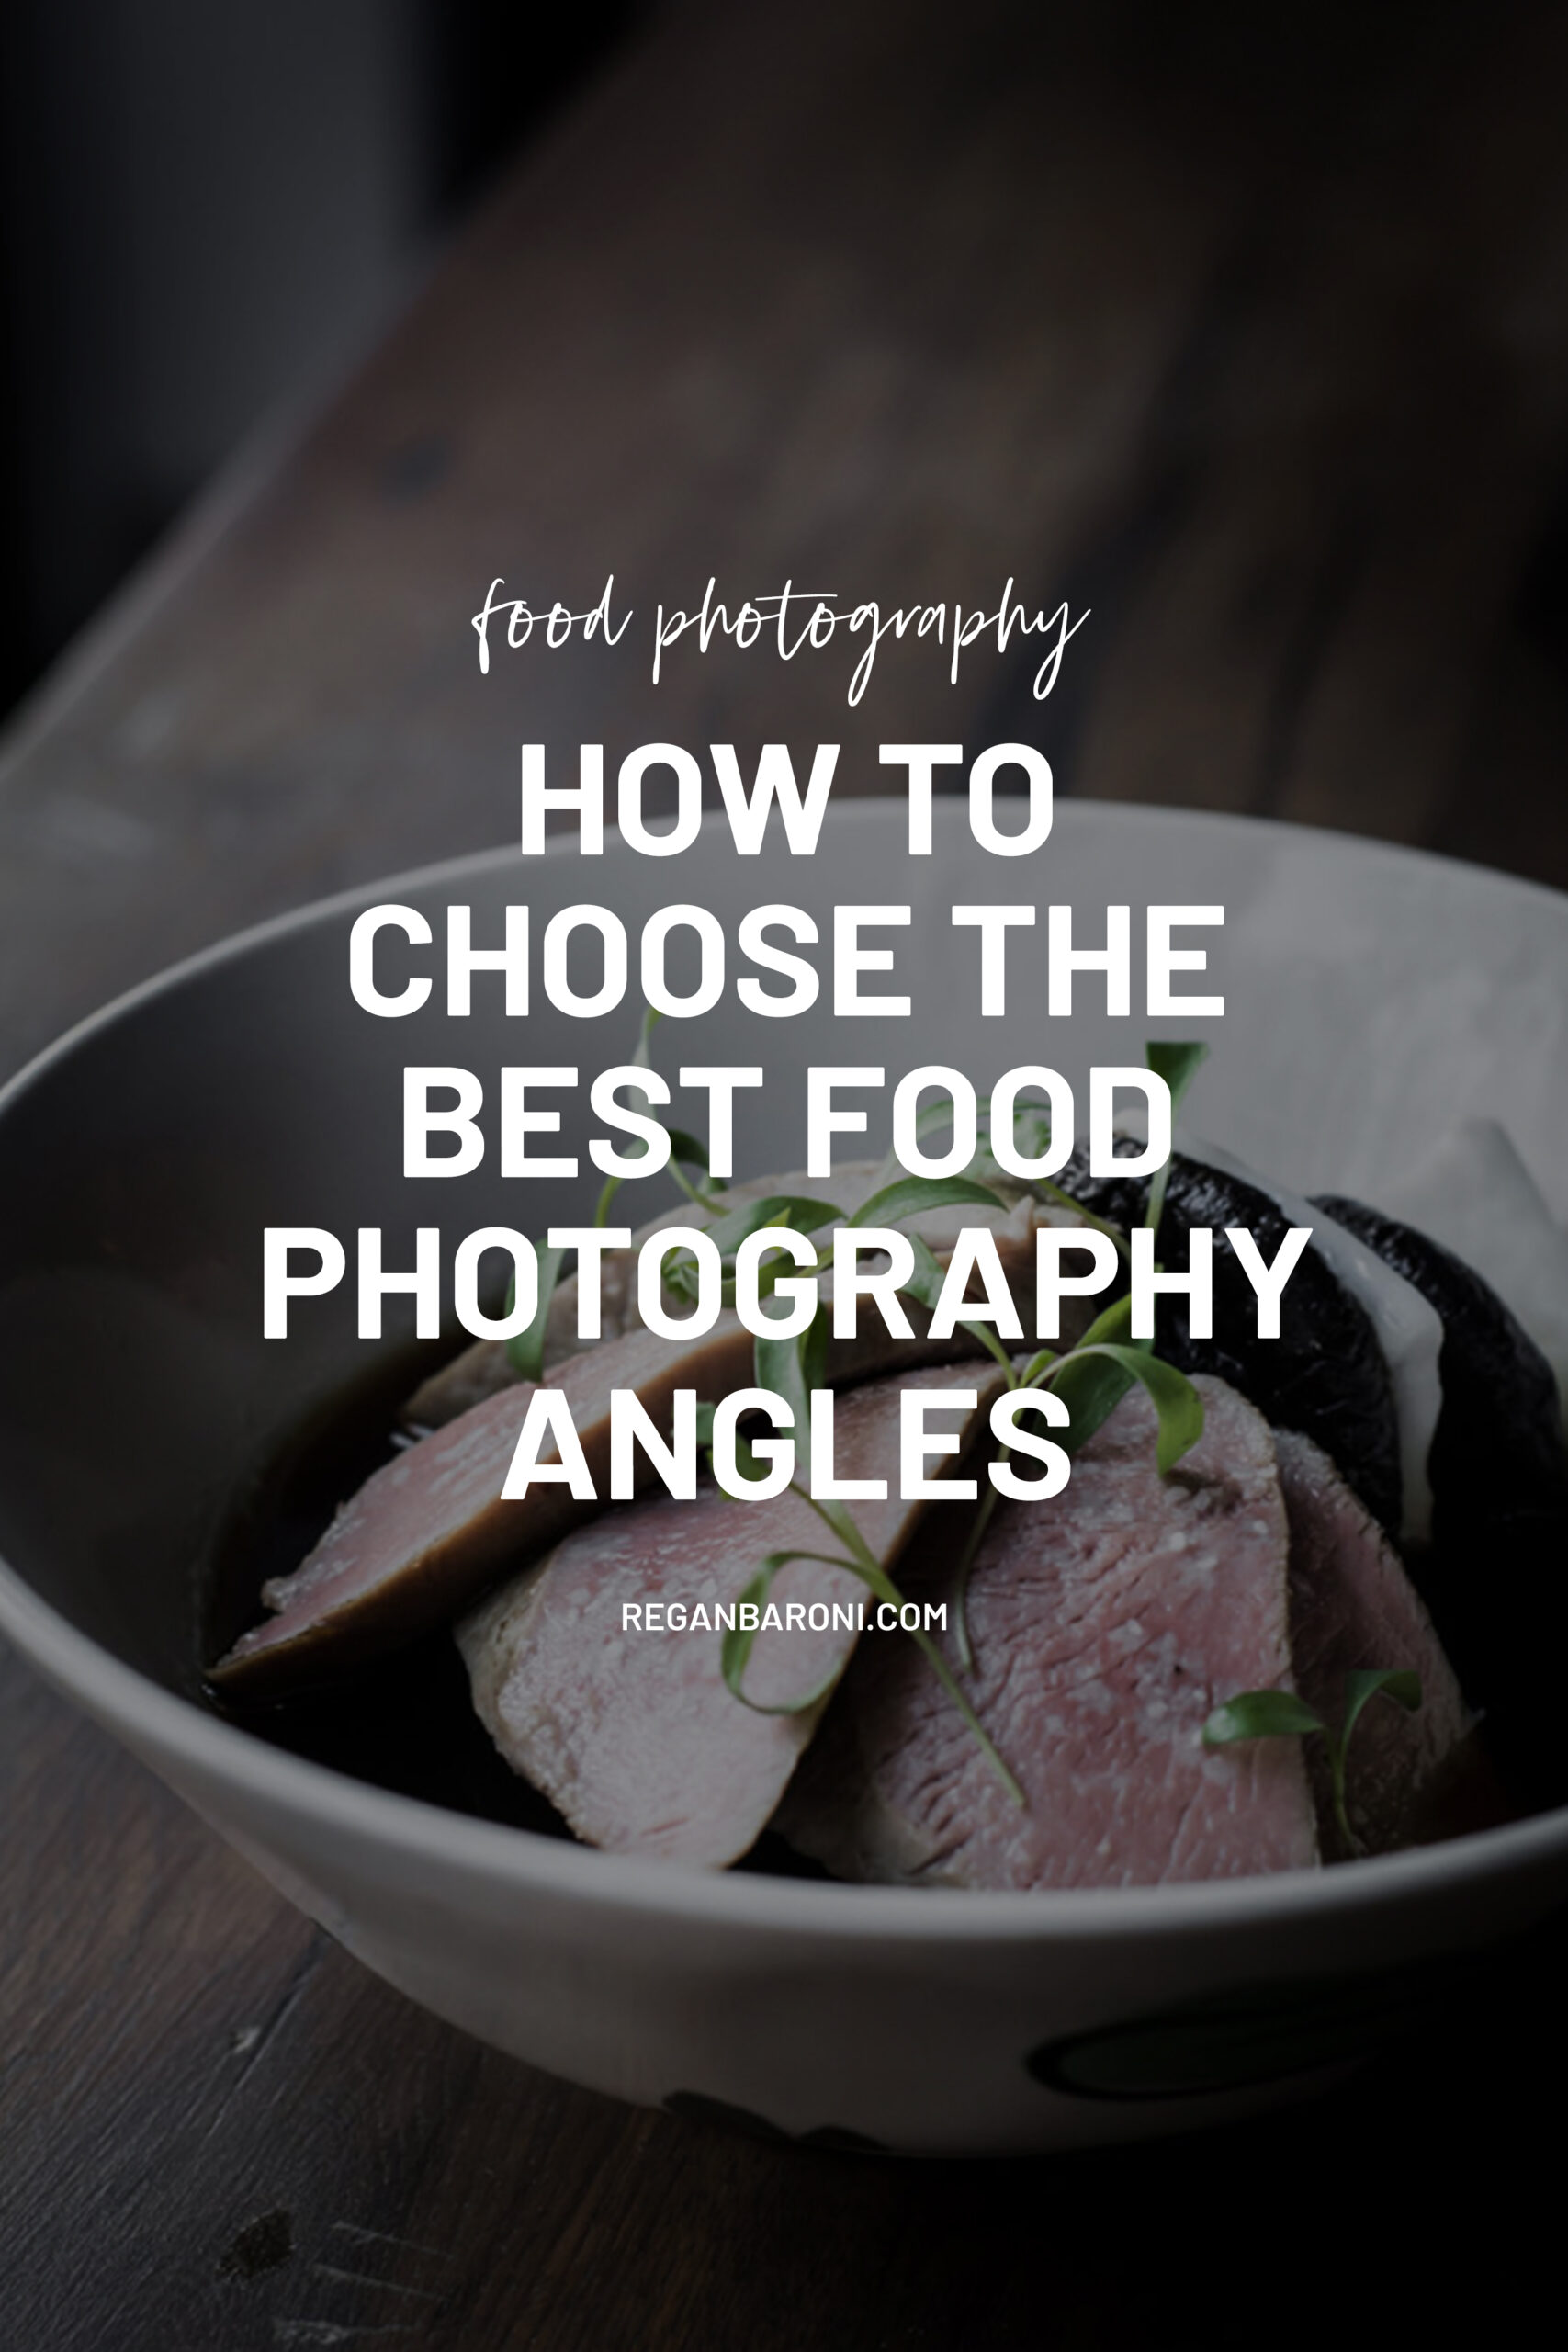 food photography angles